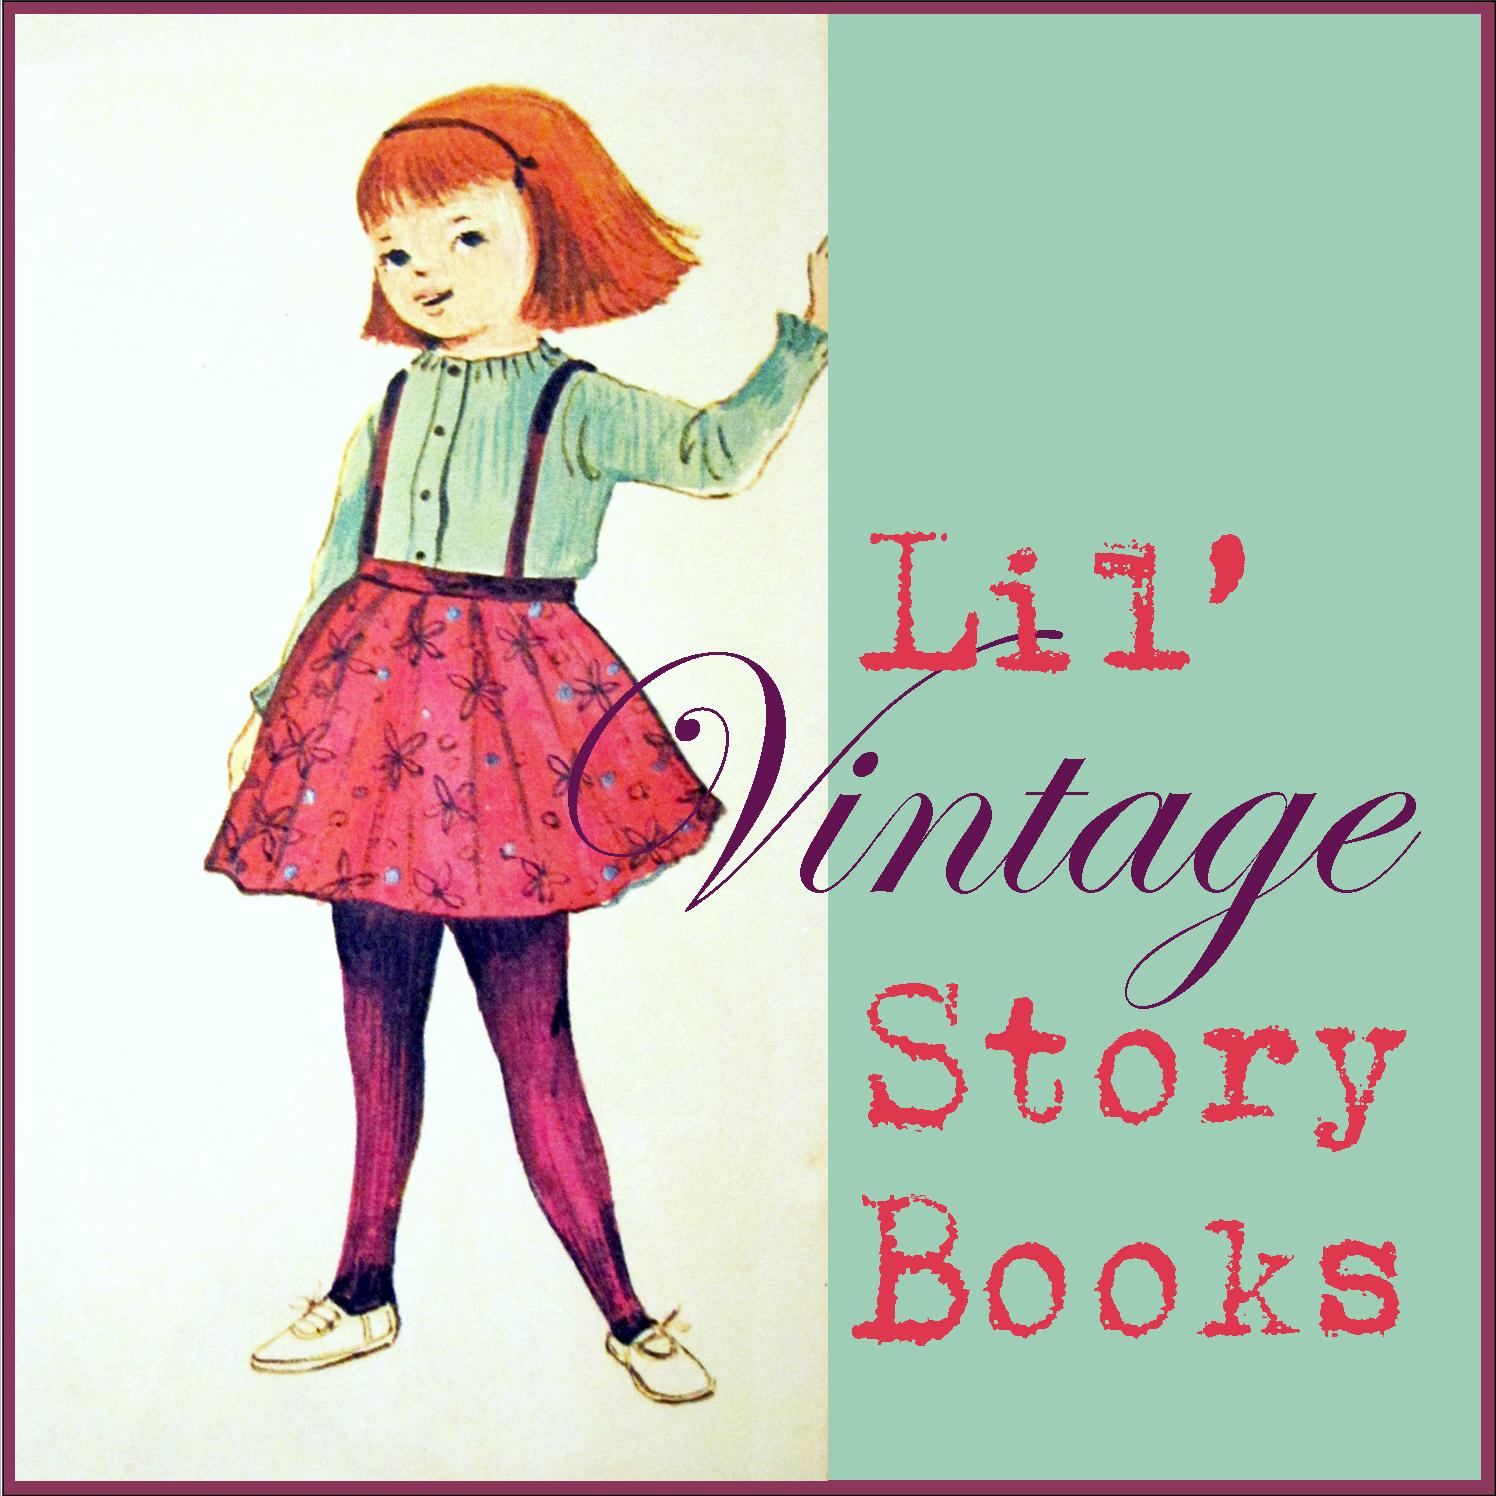 My story book. Vintage story лён. Vintage story Лоры.